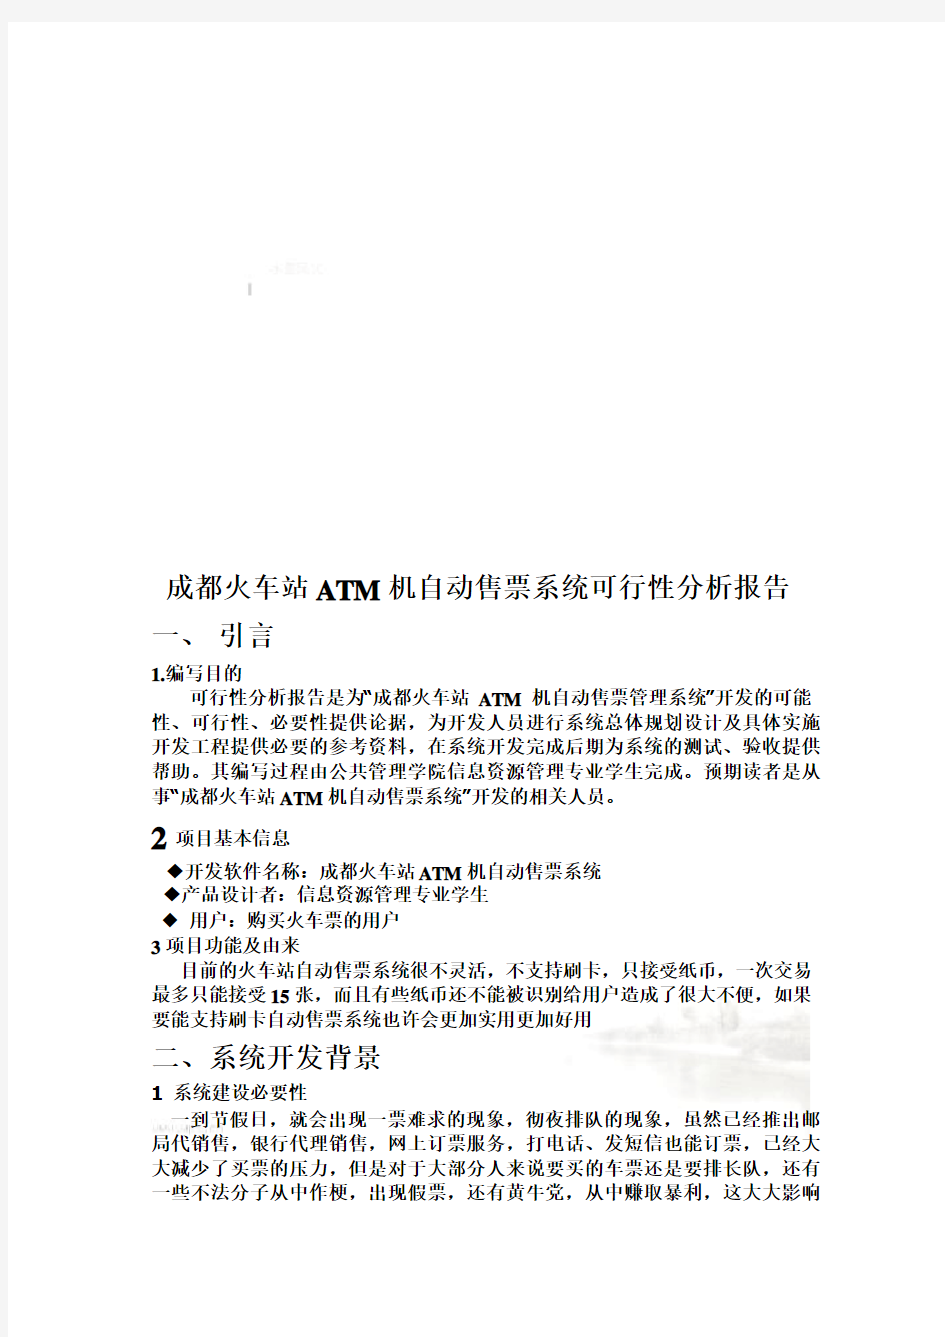 成都火车站ATM机自动售票系统可行性分析报告(doc 7页)